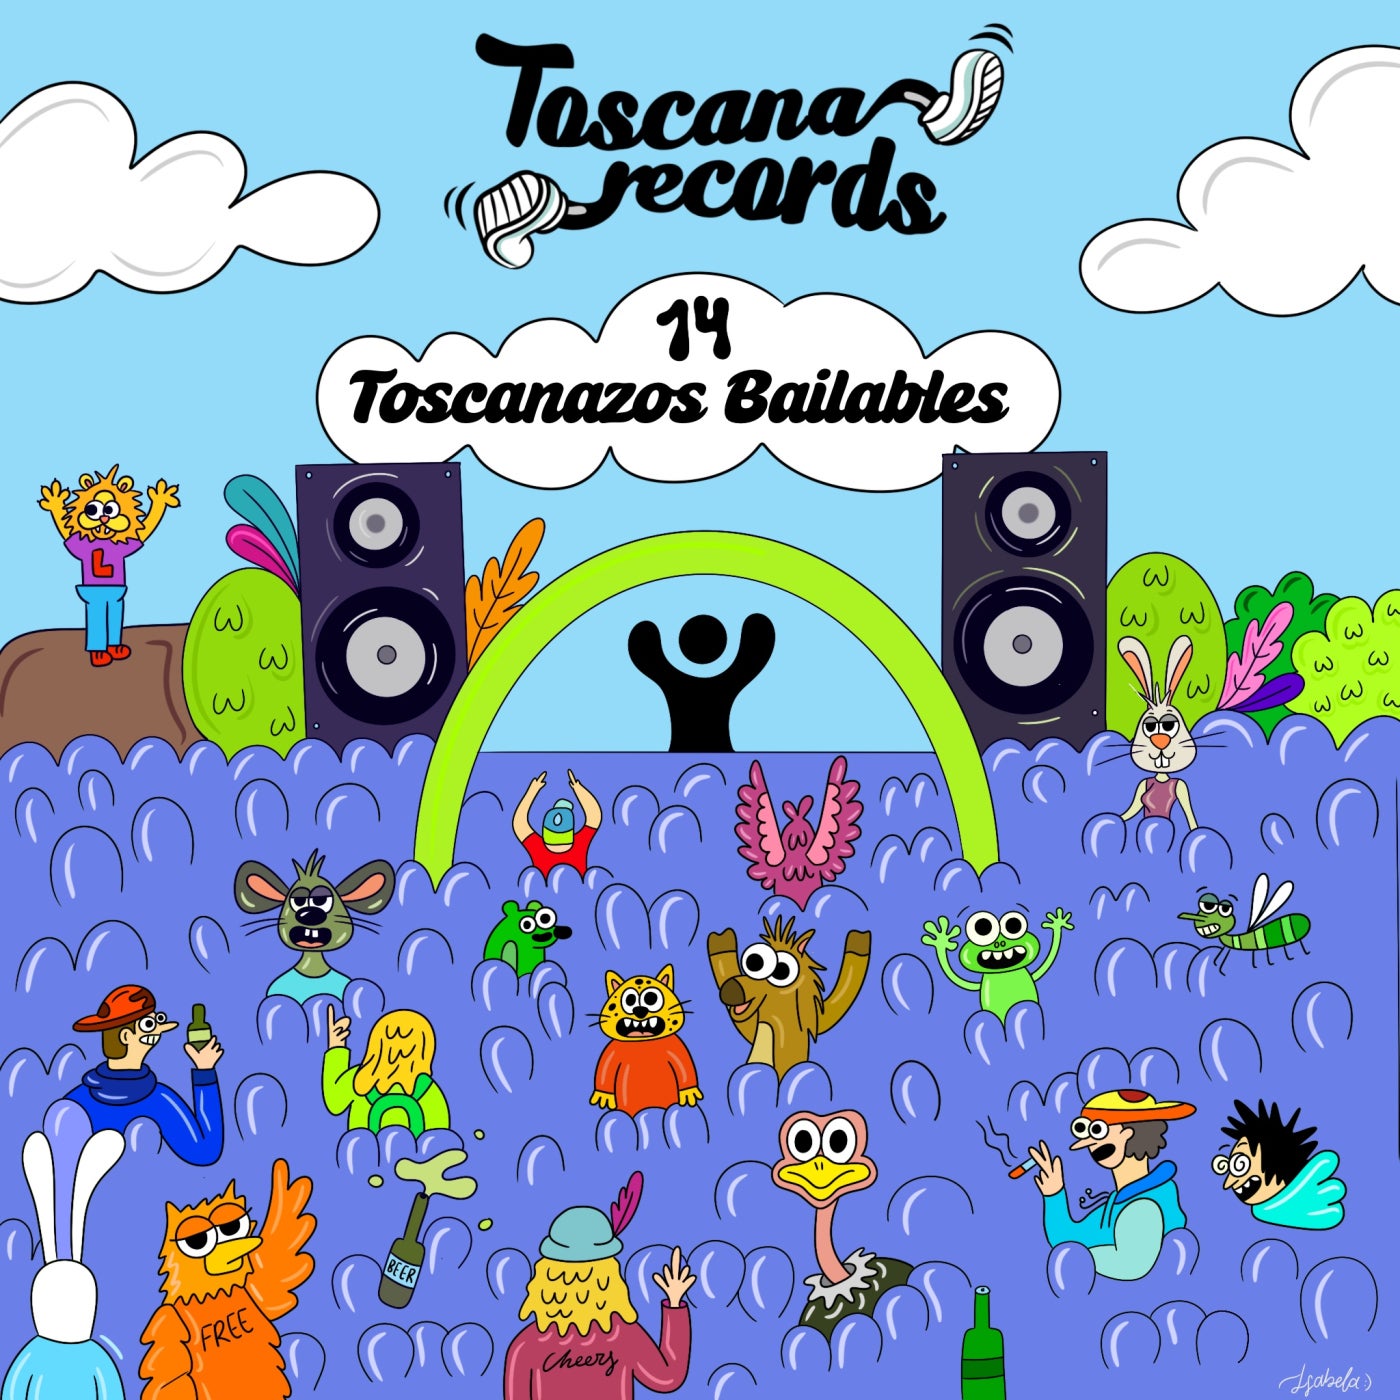 14 Tozcanazos Bailables